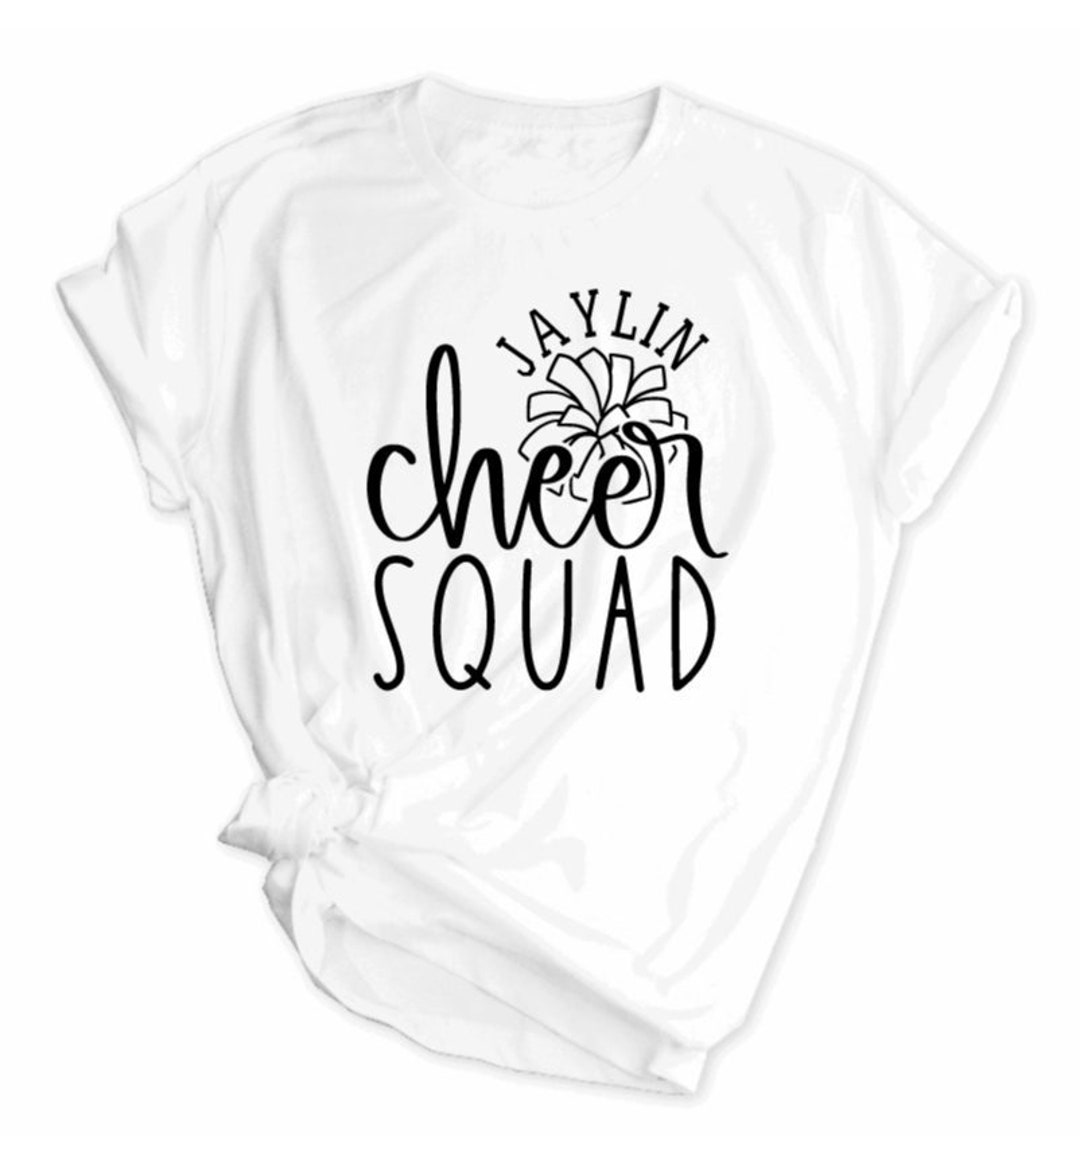 Cheer Shirt With Custom Name, Custom Cheerleading T-shirts ...